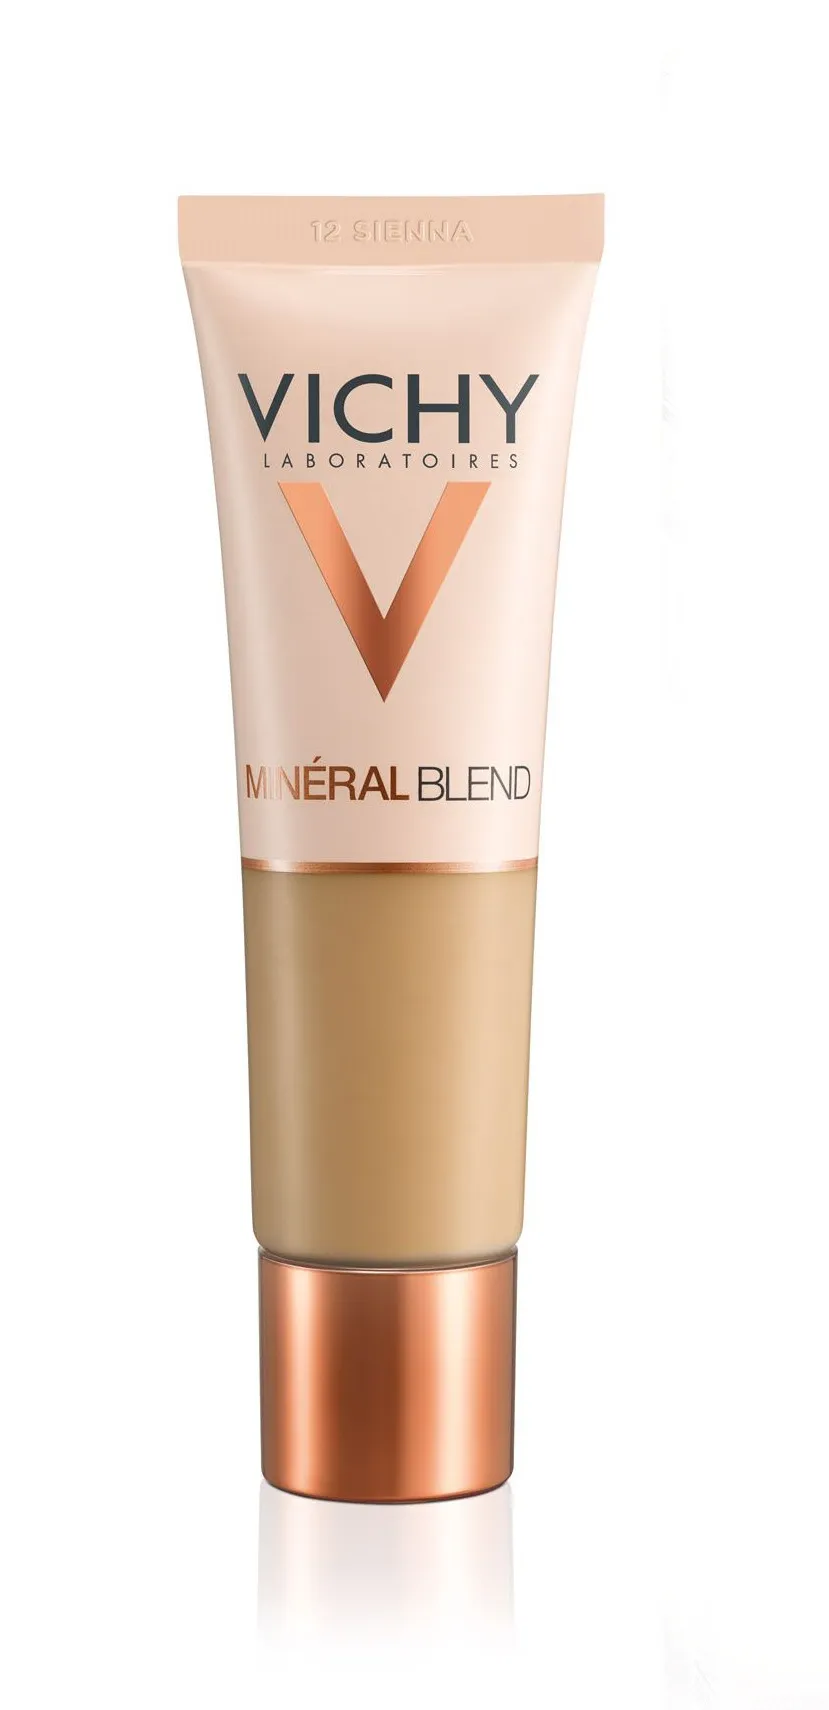 Vichy Minéral Blend odstín 12 Sienna hydratační make-up 30 ml